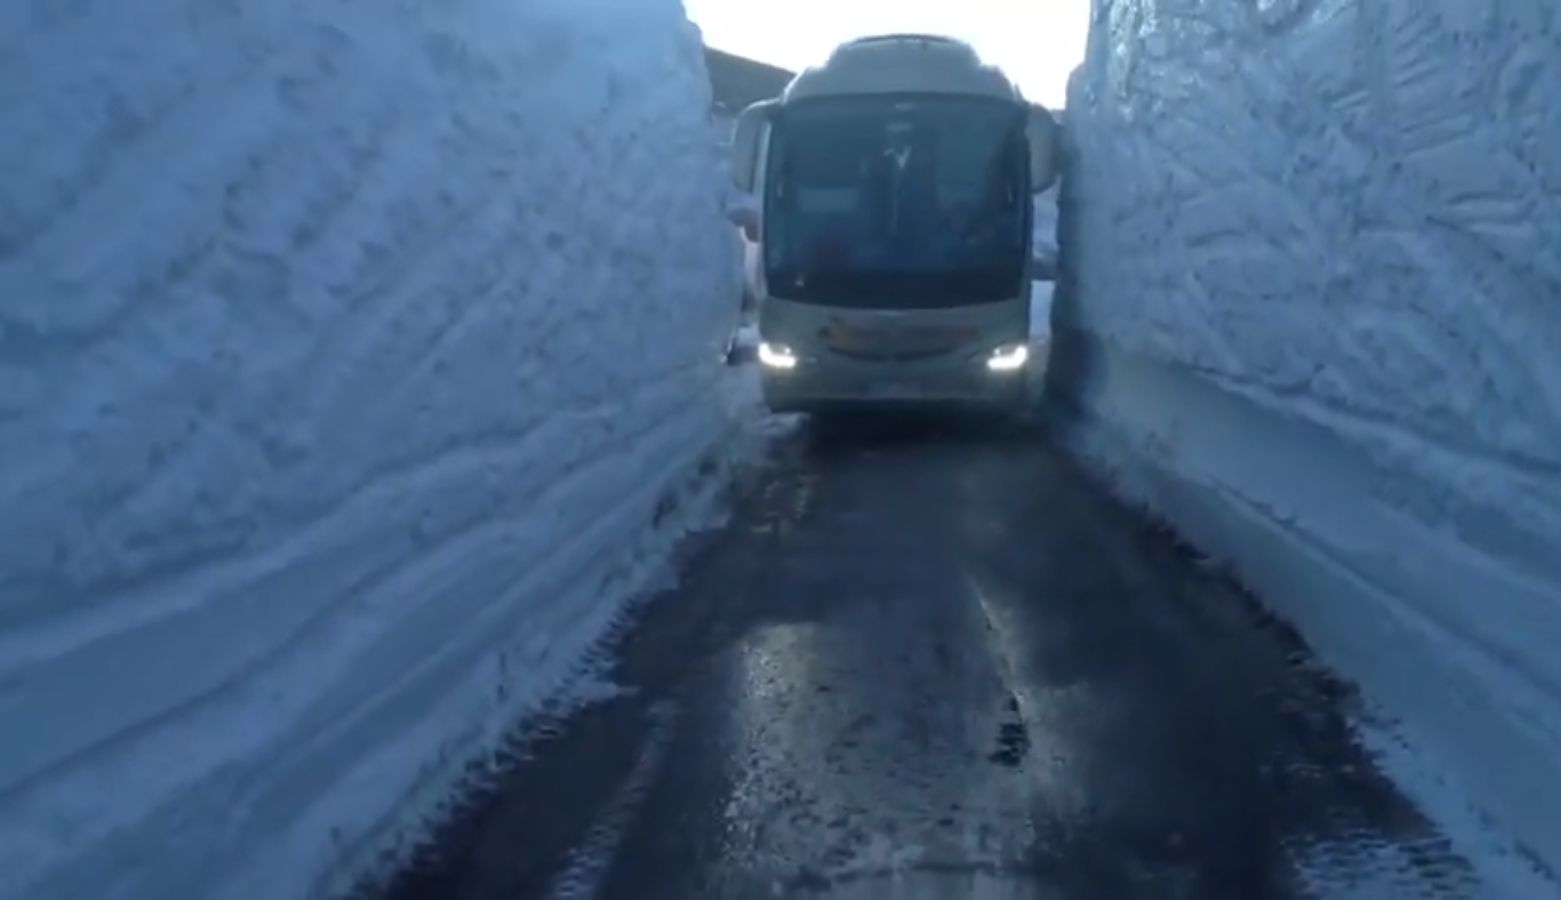 Mistrz kierownicy zmieścił się autobusem między ścianami śniegu. Miał kilka centymetrów przestrzeni